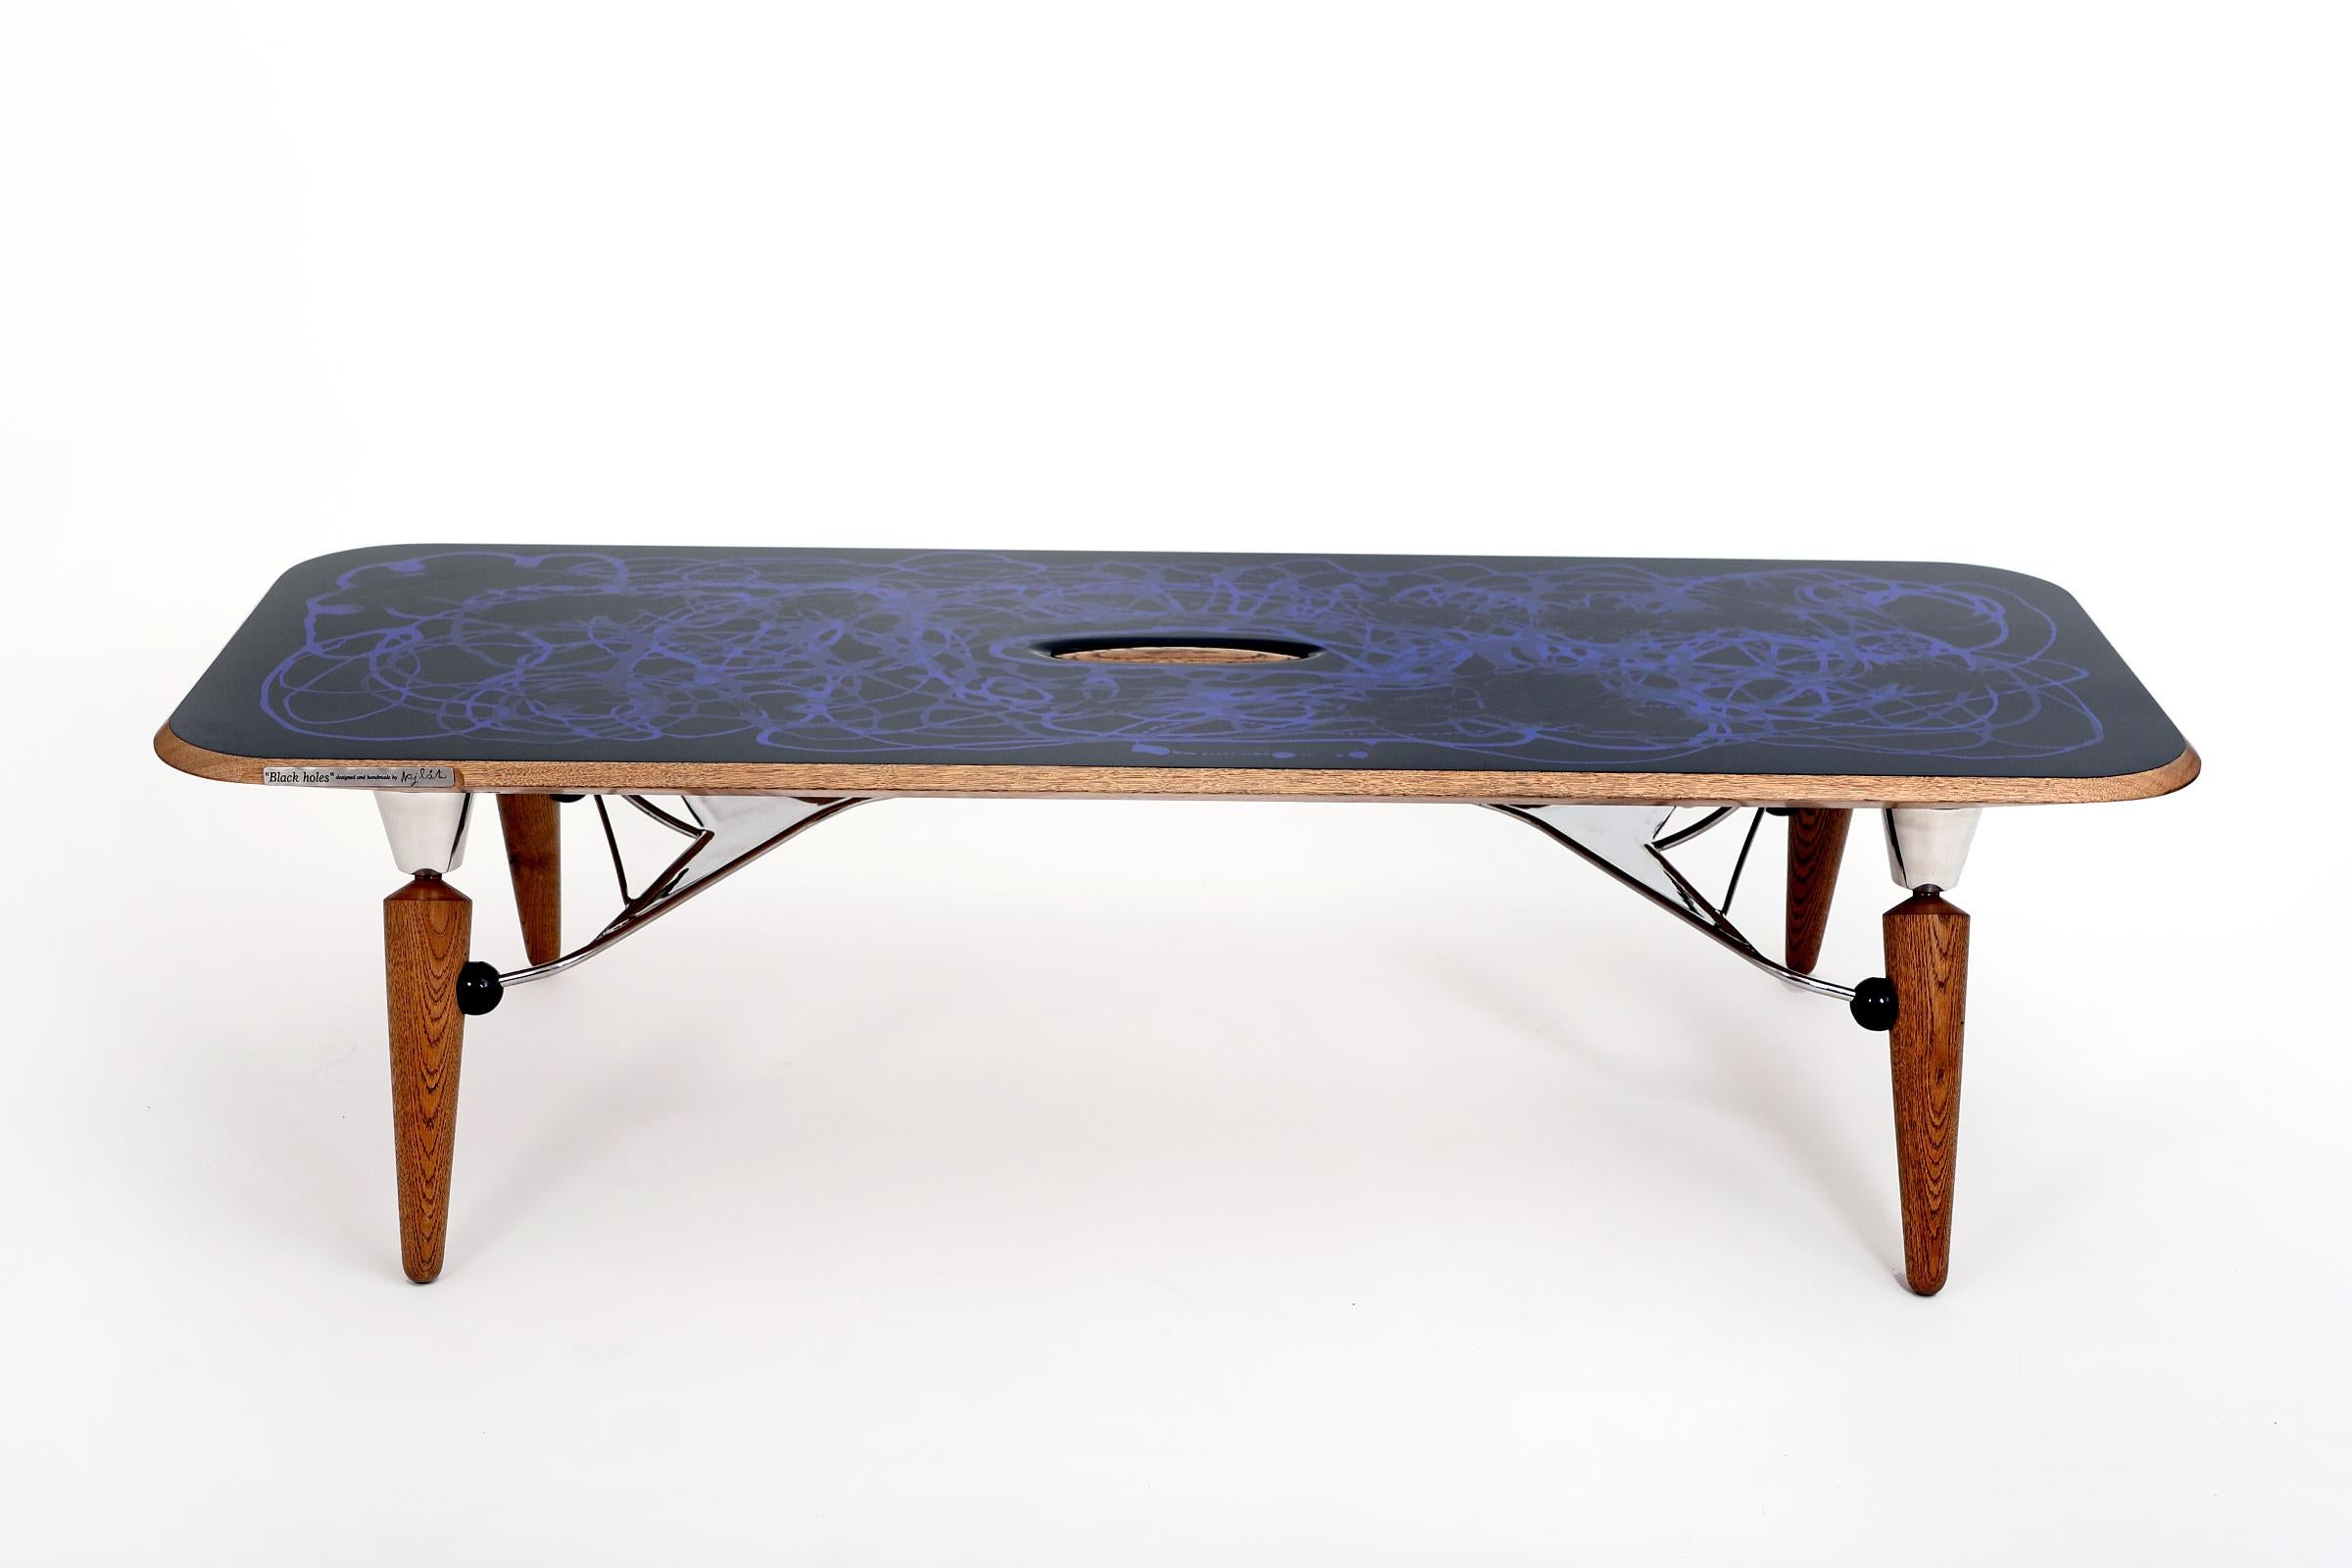 La table peut changer et régler la hauteur ( 34 - 39 cm ) du plateau en inclinant les pieds, en utilisant le mécanisme de la cour centrale.
La planche, ainsi que les pieds et la cour centrale, sont en bois de chêne. Les autres composants du